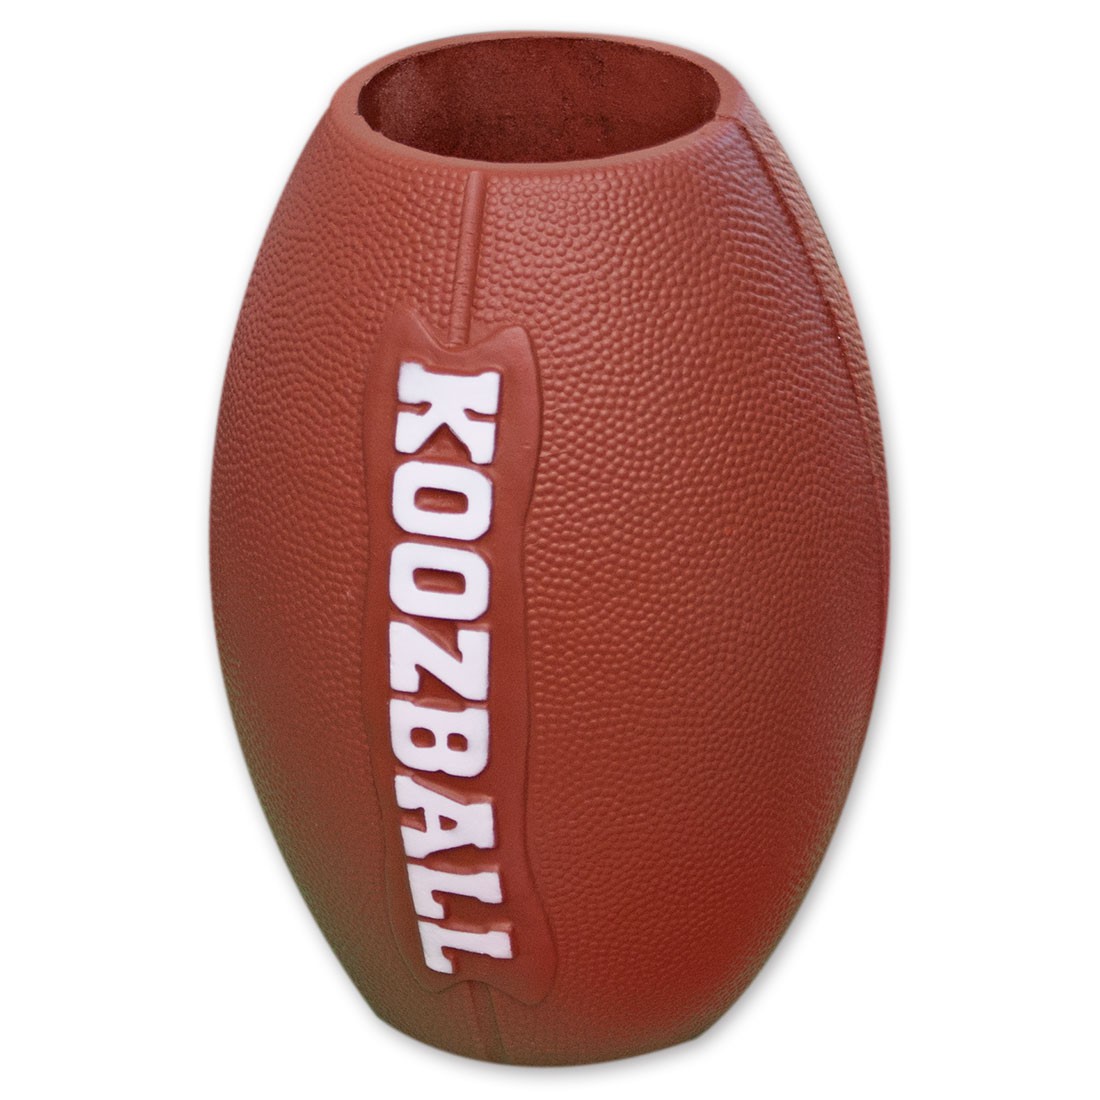 "Koozball" Football Can Cooler